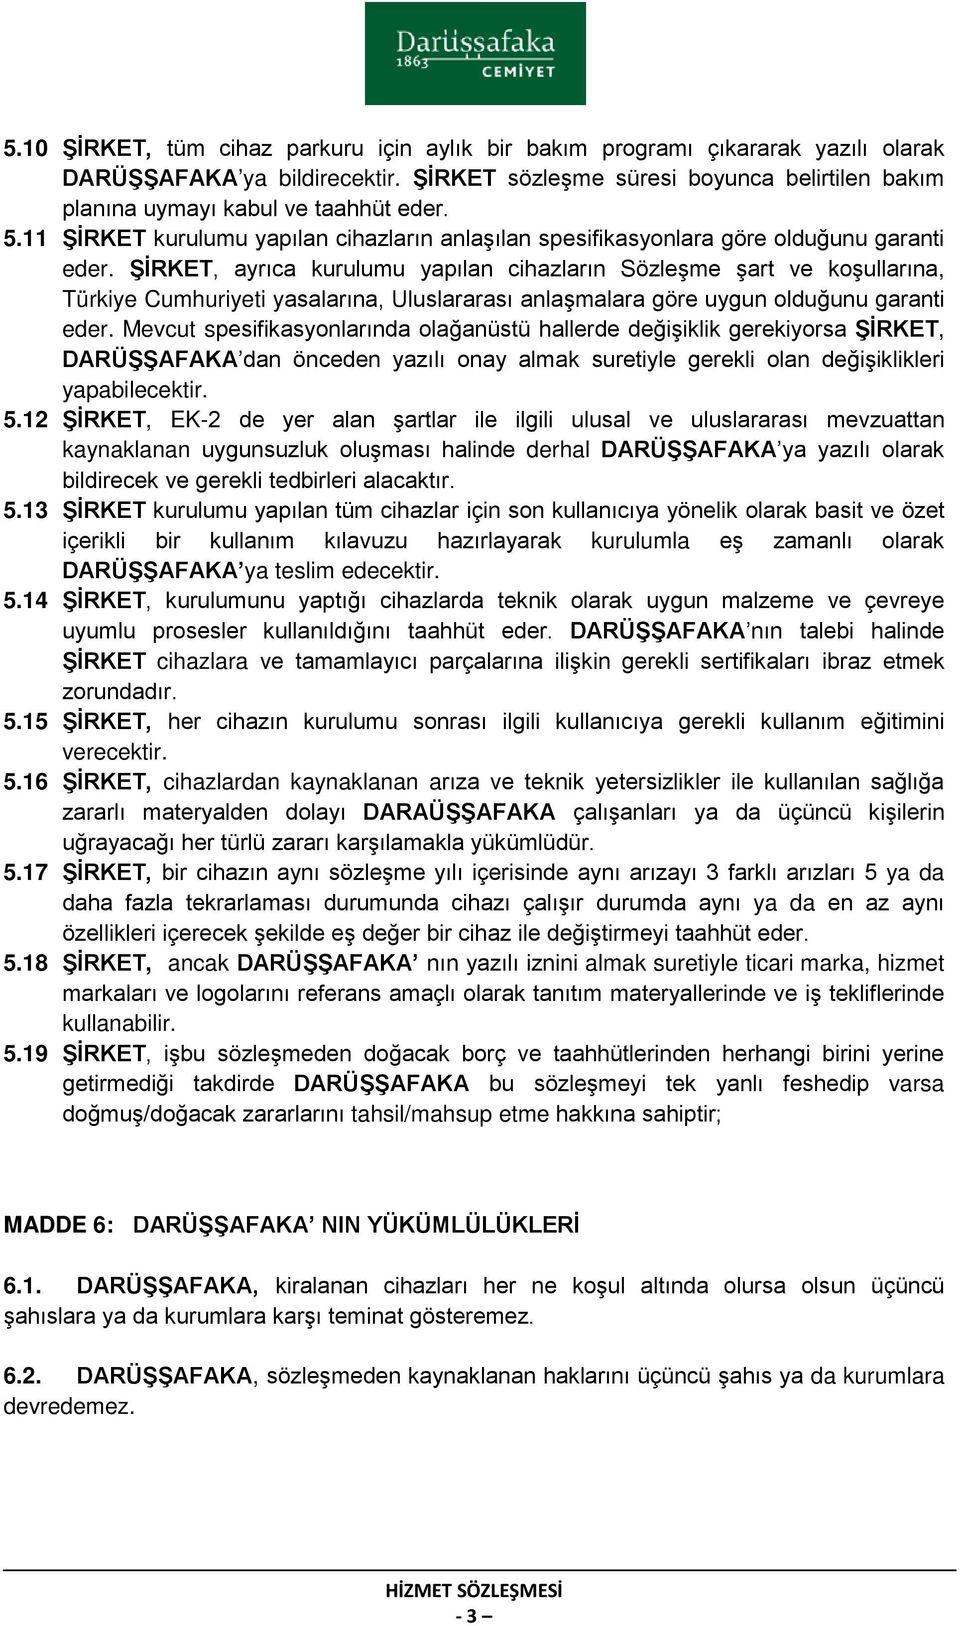 ŞİRKET, ayrıca kurulumu yapılan cihazların Sözleşme şart ve koşullarına, Türkiye Cumhuriyeti yasalarına, Uluslararası anlaşmalara göre uygun olduğunu garanti eder.